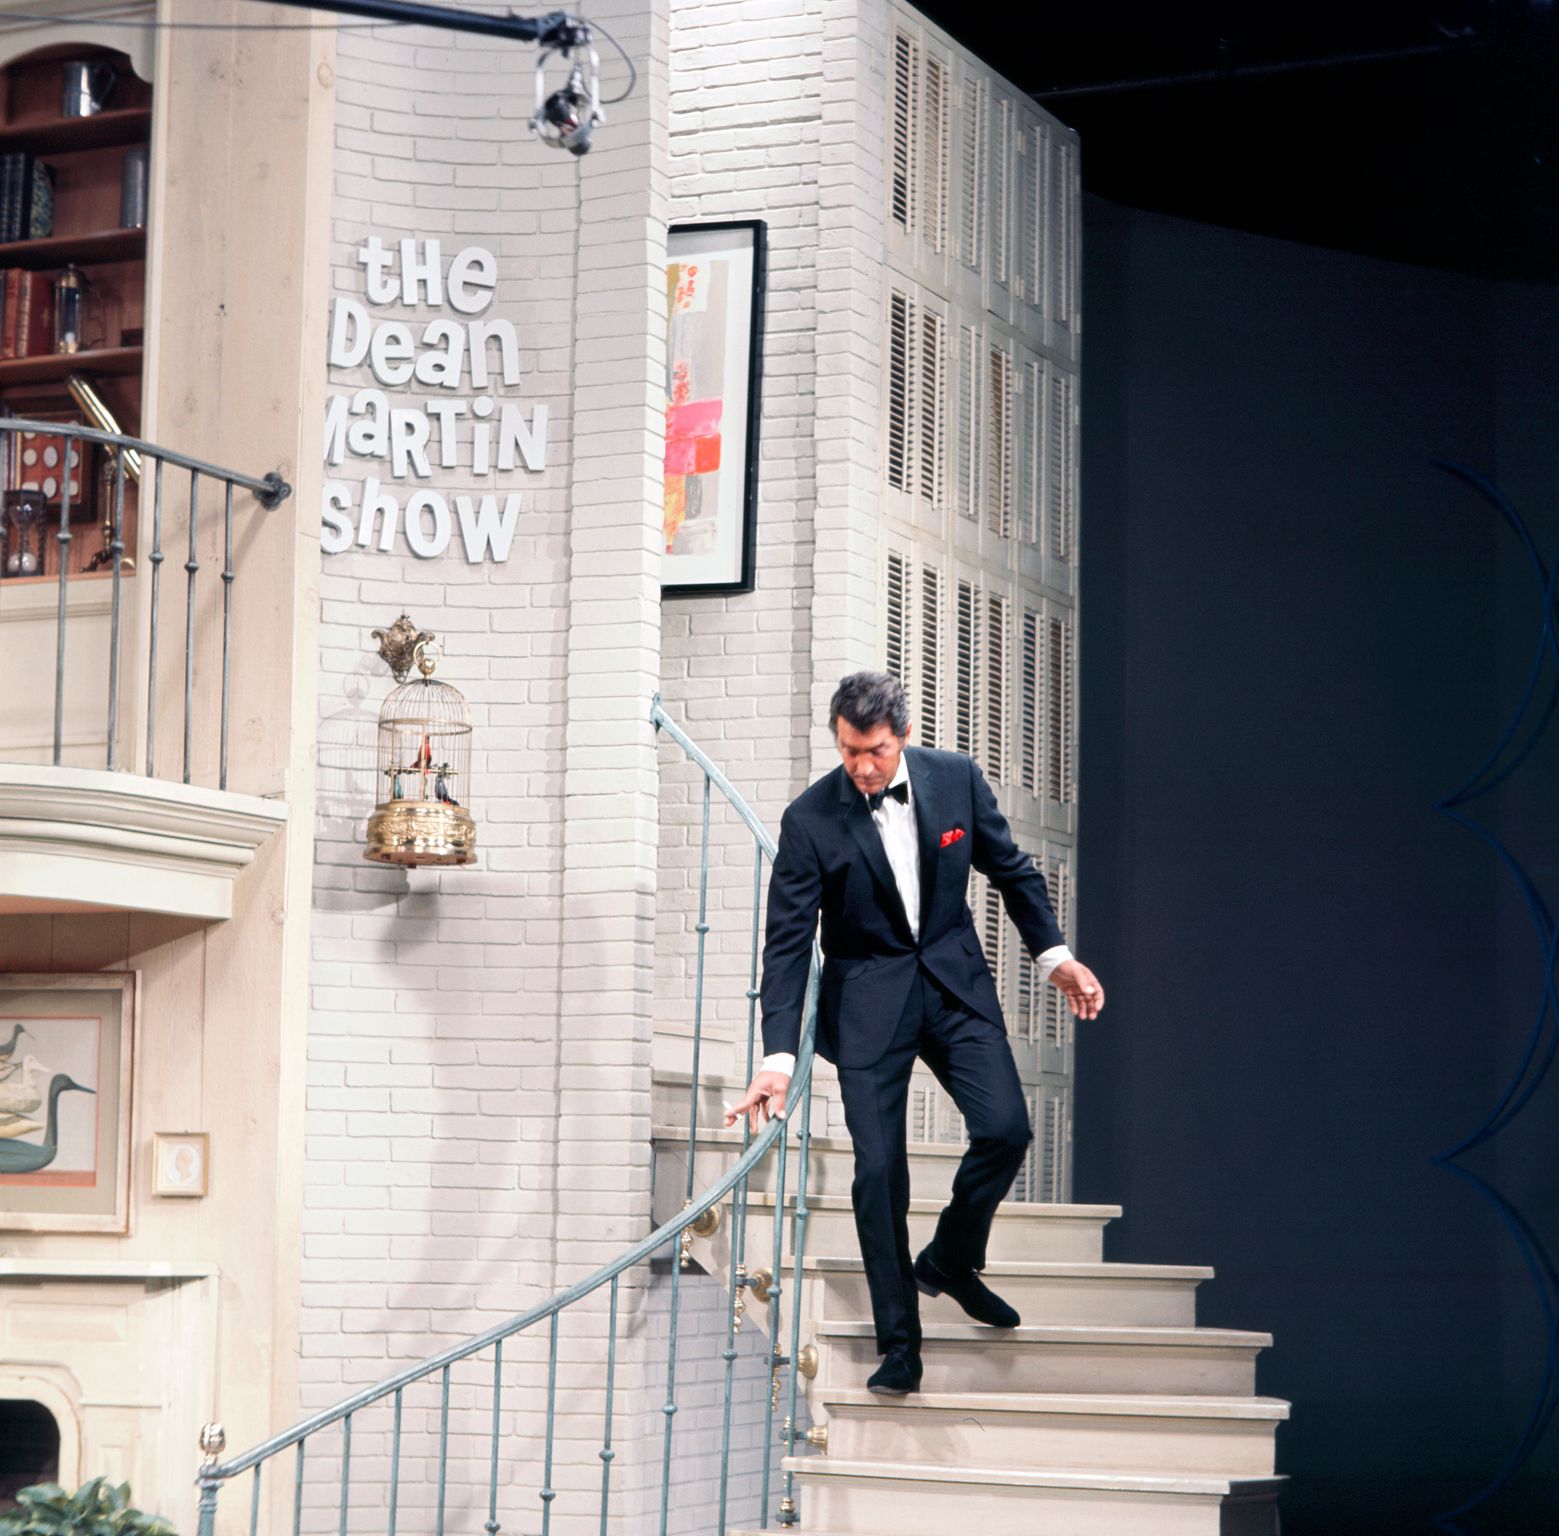 Dean Martin am Set von "The Dean Martin Show" um 1970 | Quelle: Getty Images